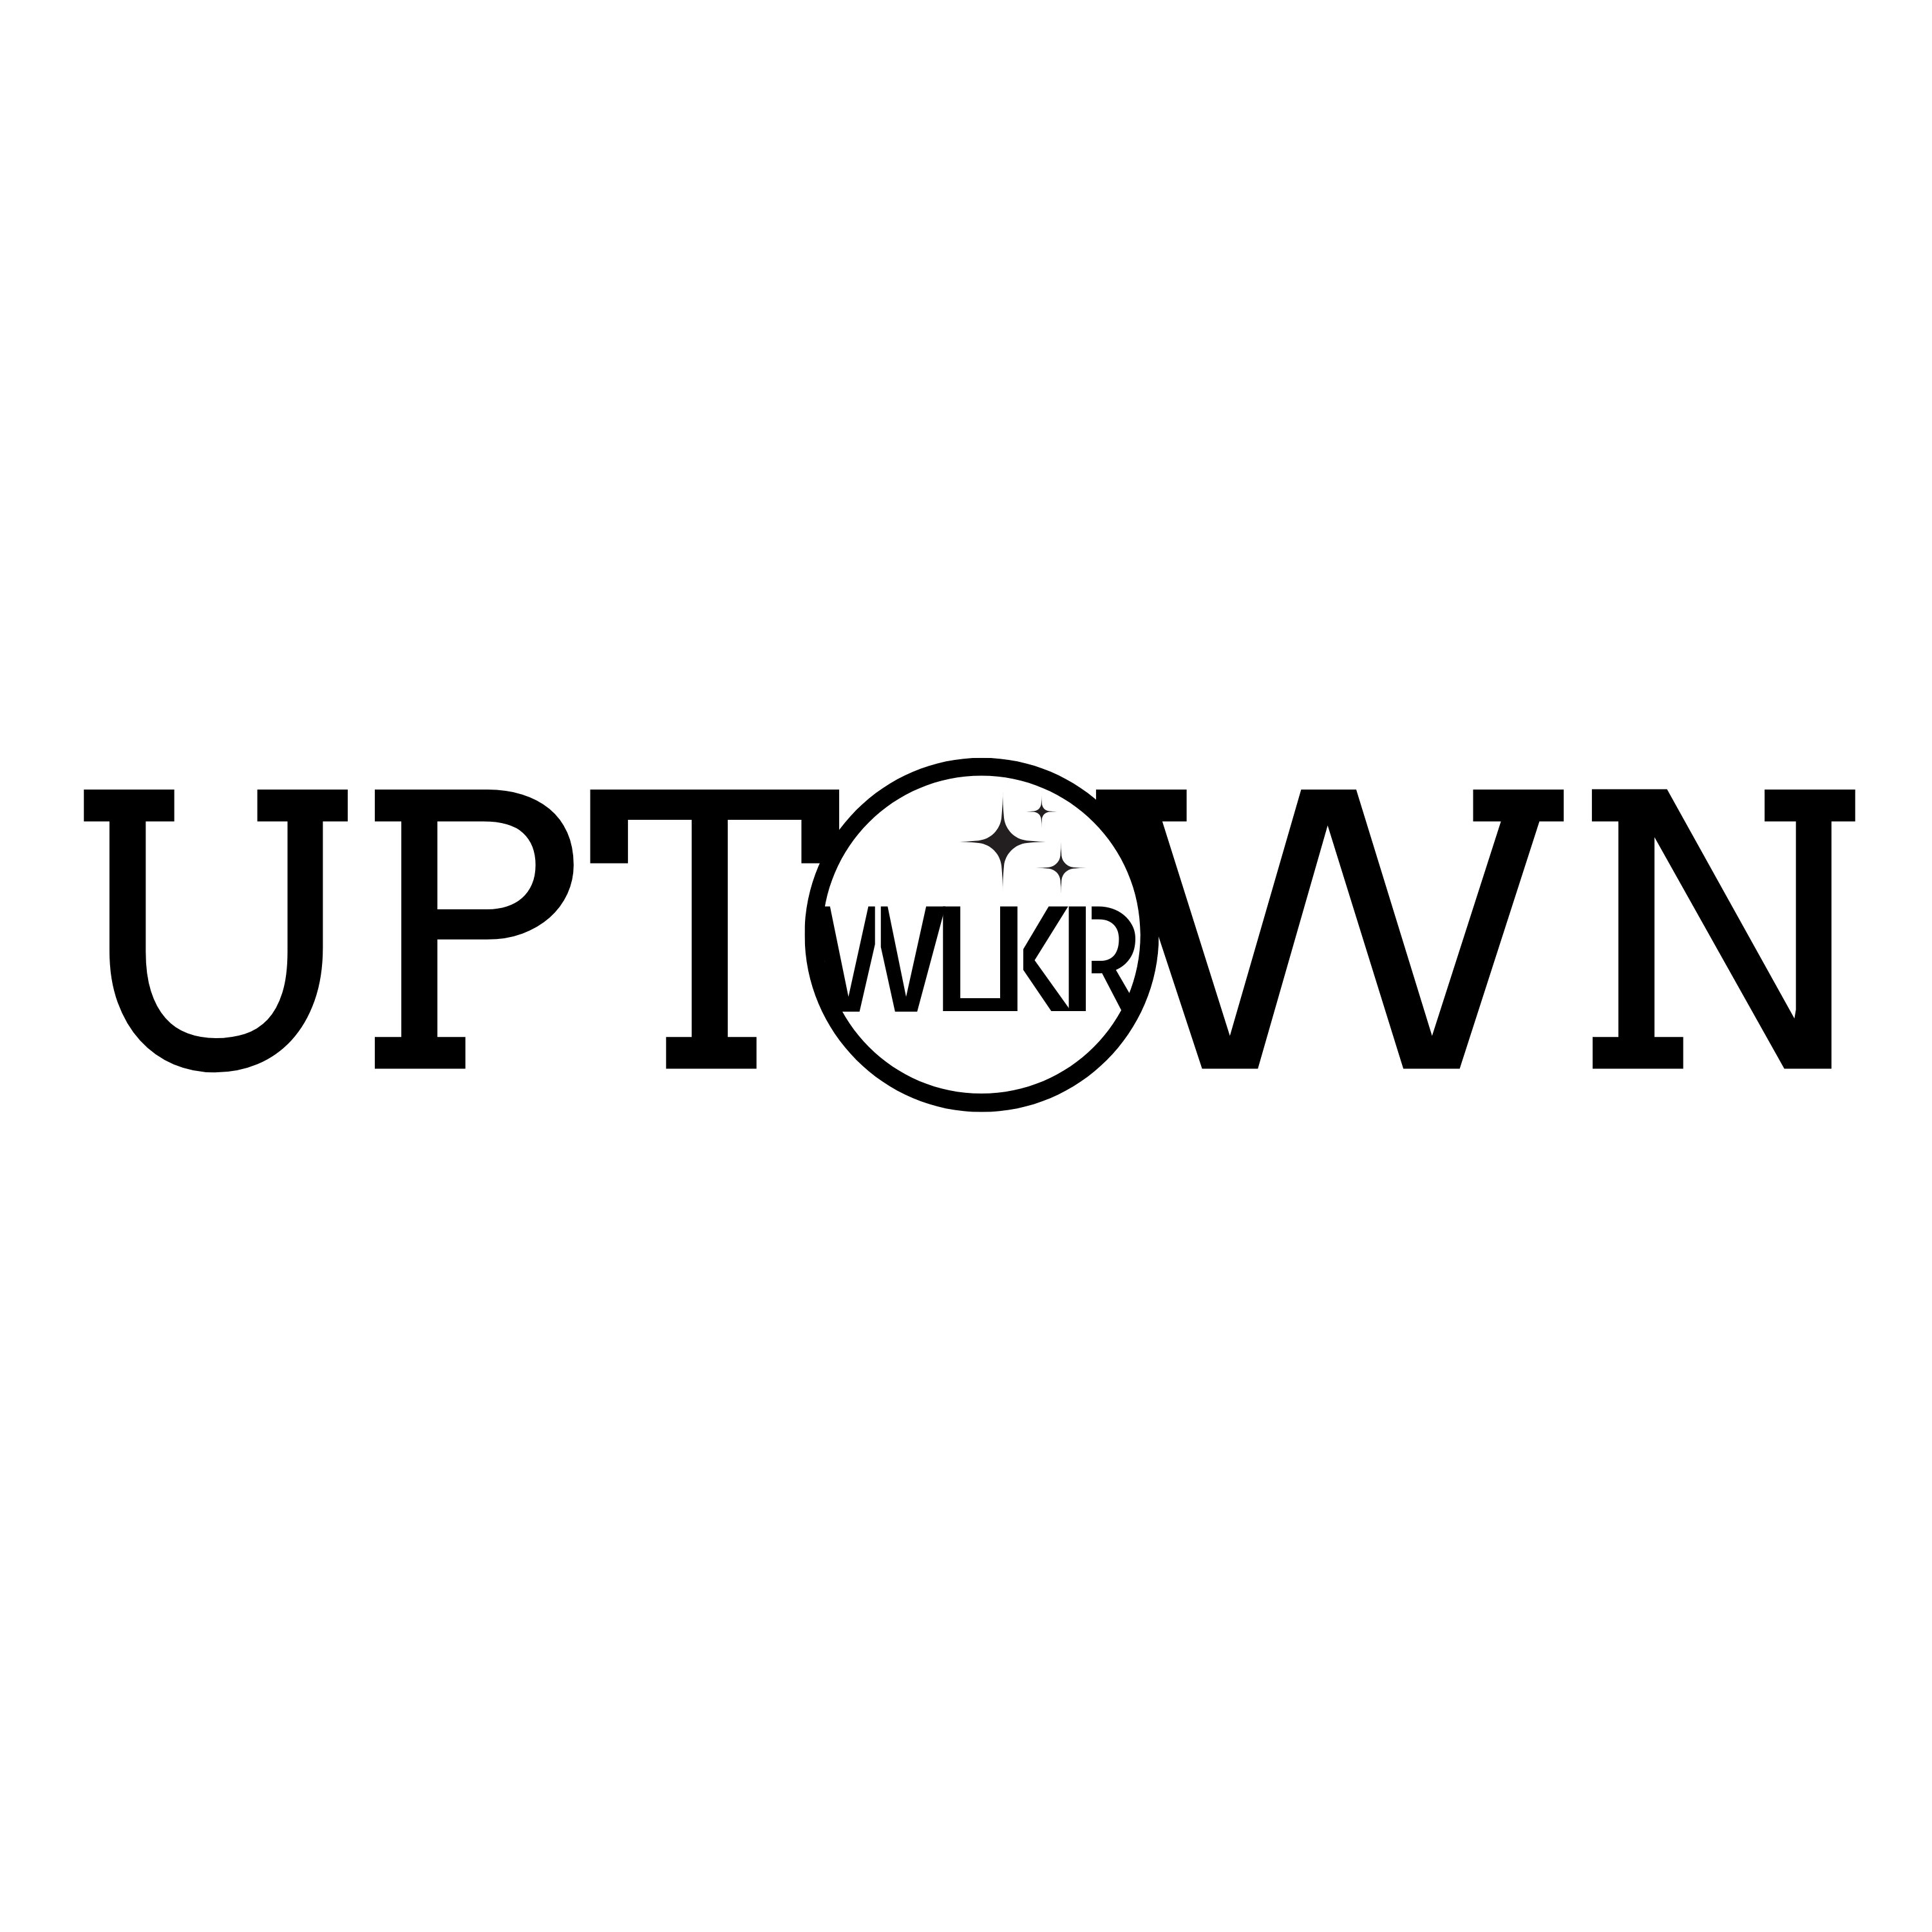 Events by UptownWalker